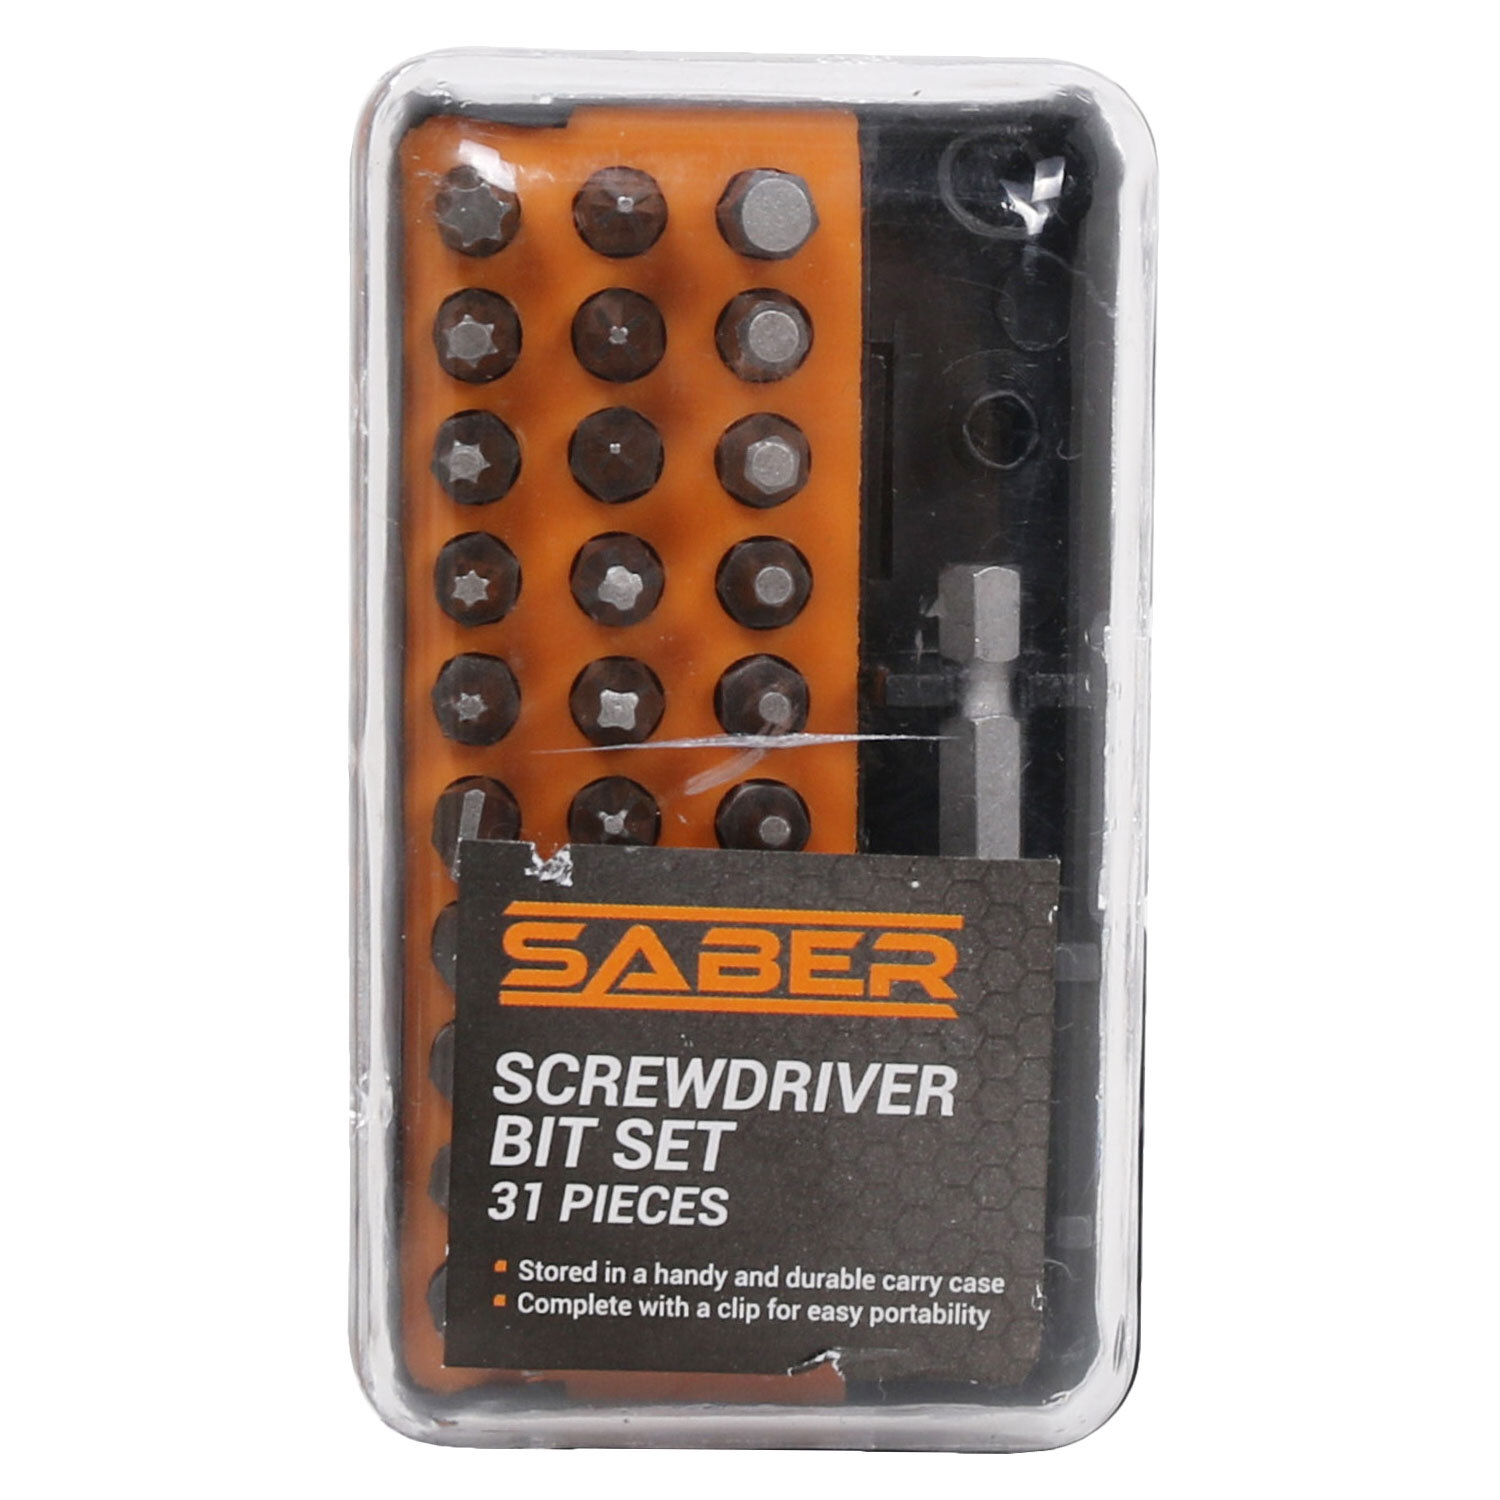 Saber Screwdriver Bit Set Image 1